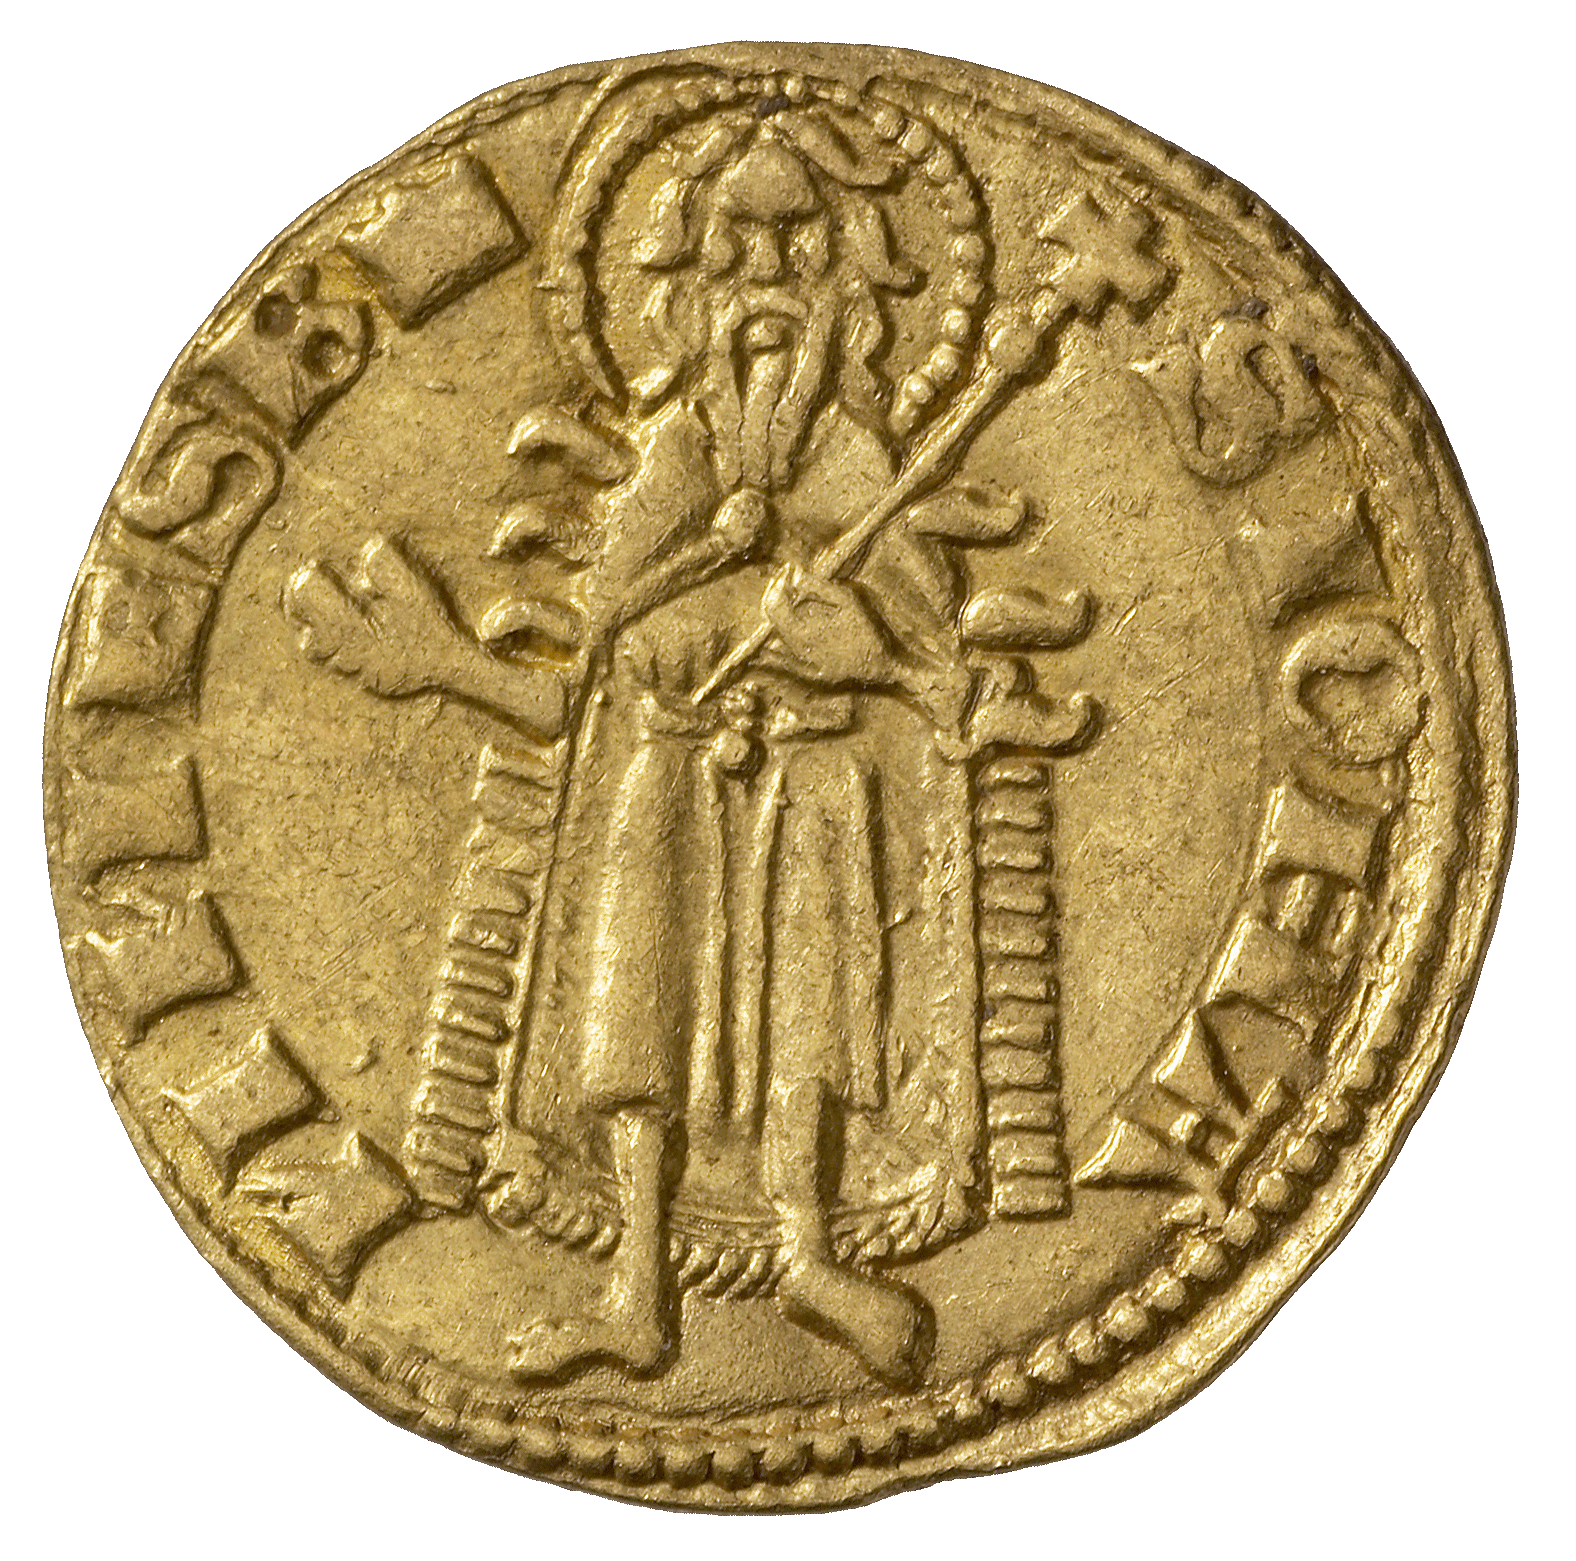 Heiliges Römisches Reich, Königreich Ungarn, Ludwig I. von Anjou, Goldgulden (reverse)